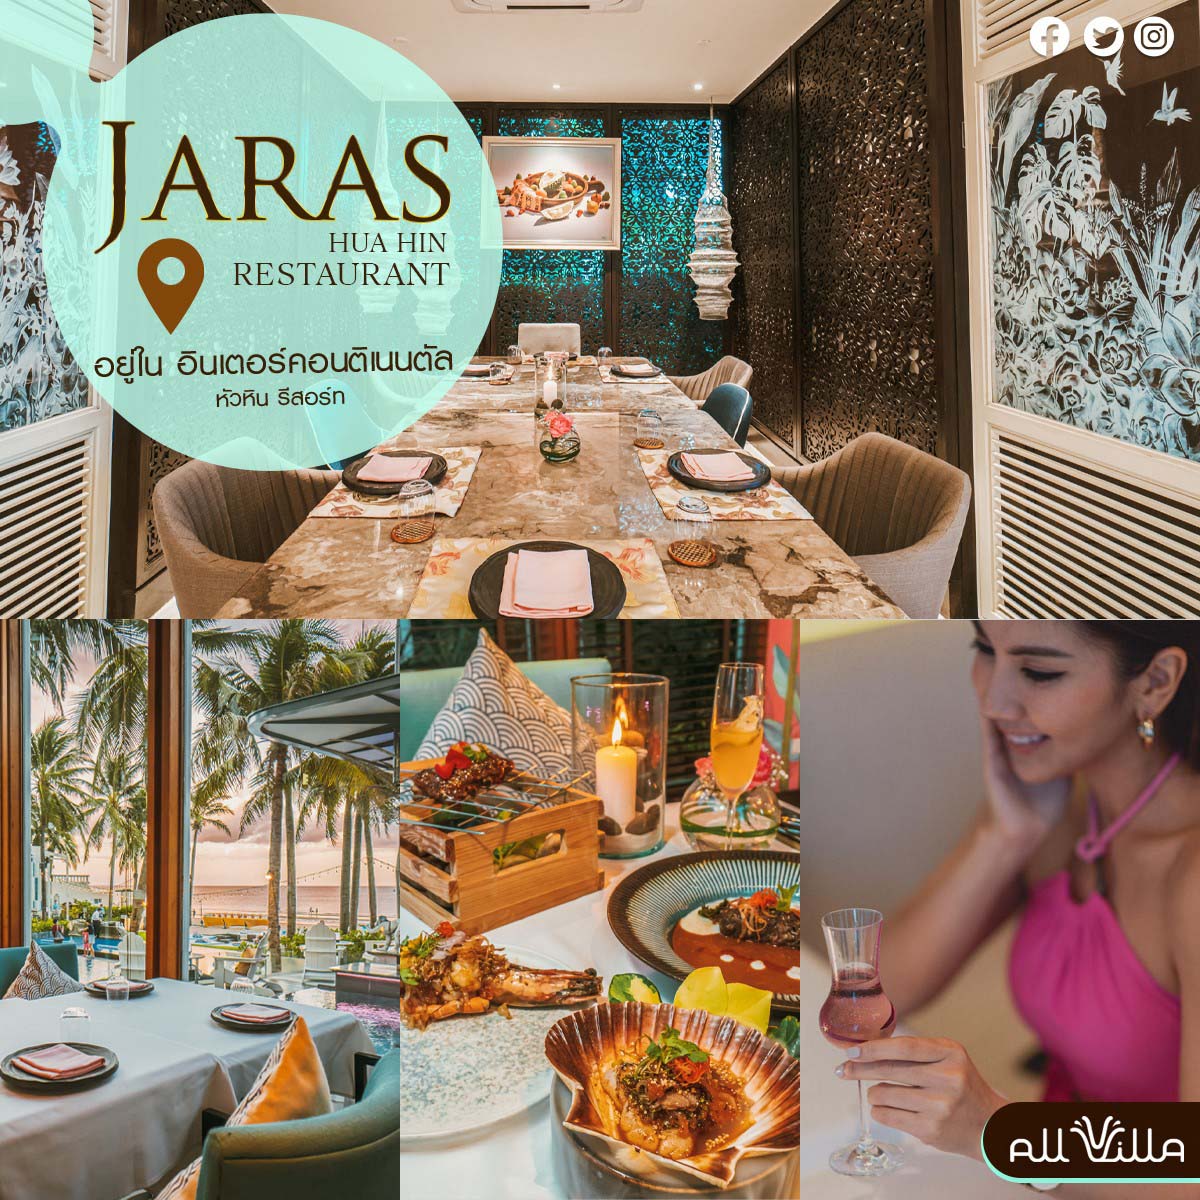 Jaras Restaurant Huahin ร้านหรู หัวหิน